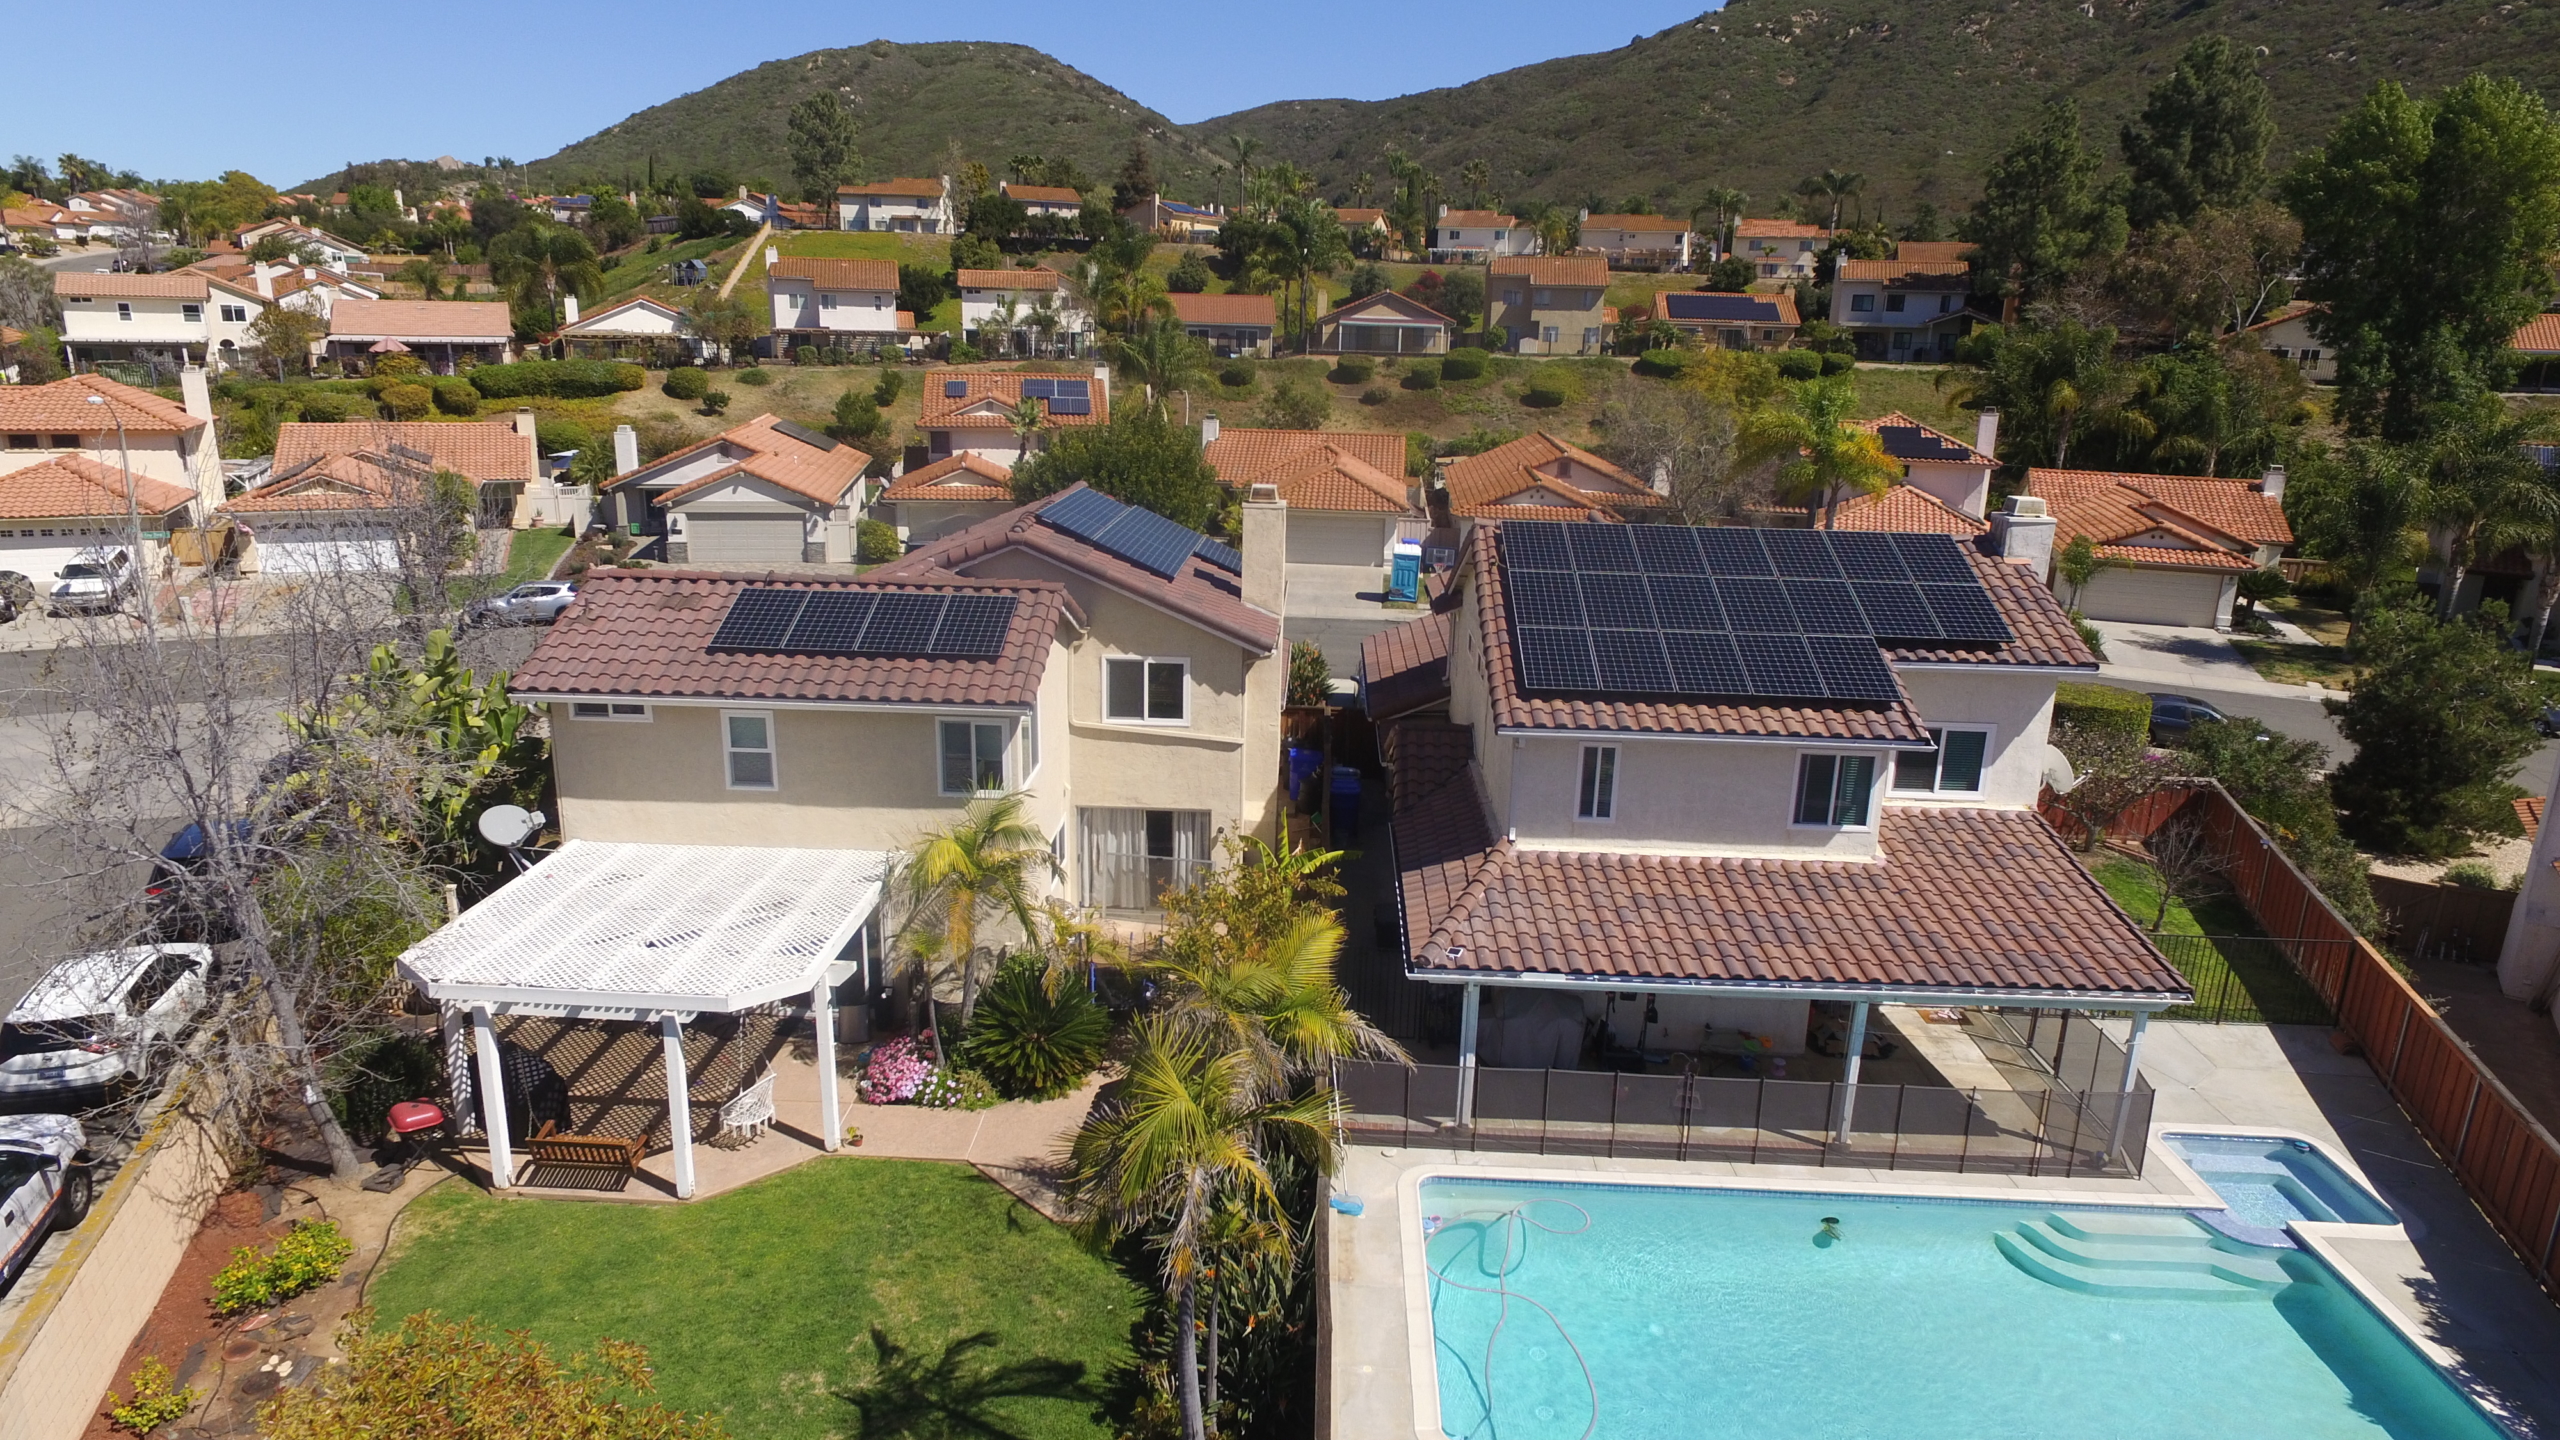 Neighbors Install Solar with SolarTech